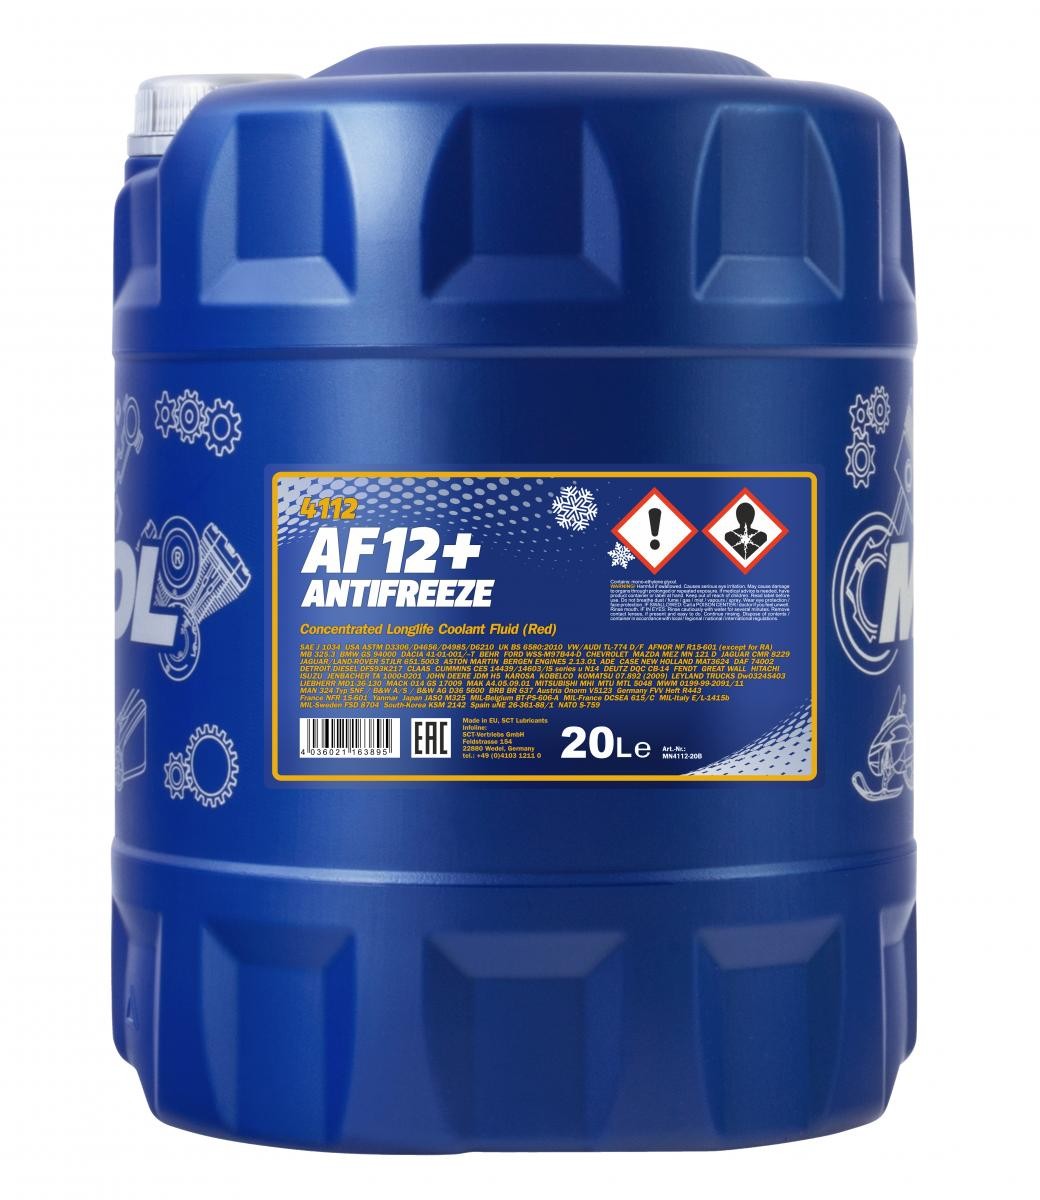 Mannol 4112 Kühlerfrostschutz Antifreeze AF12+ Longlife Konzentrat 20 Liter